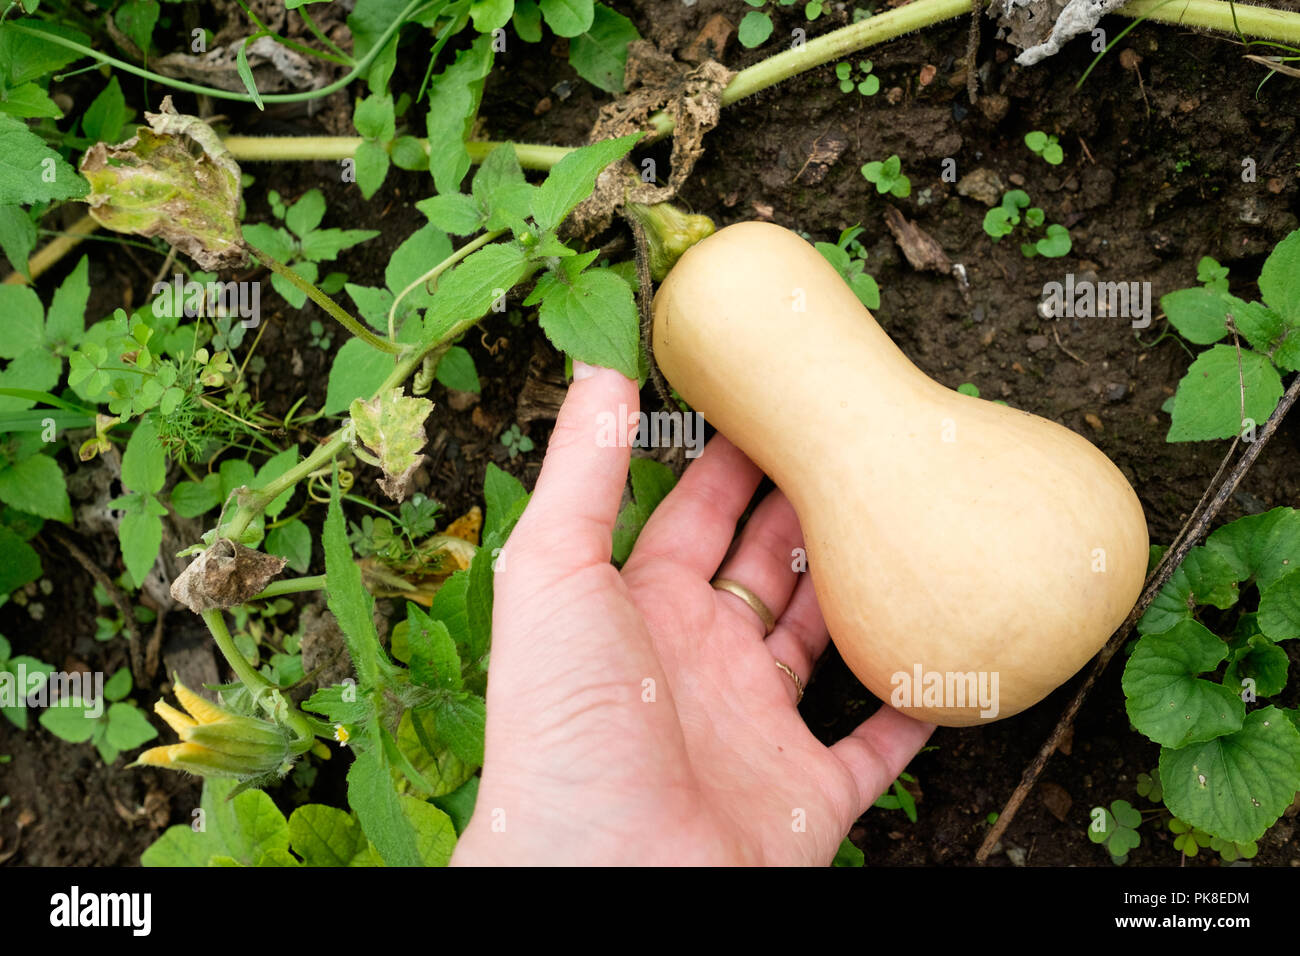 Honeynut squash, relativamente una nuova varietà di zucche invernali, crescendo in un orto. Foto Stock